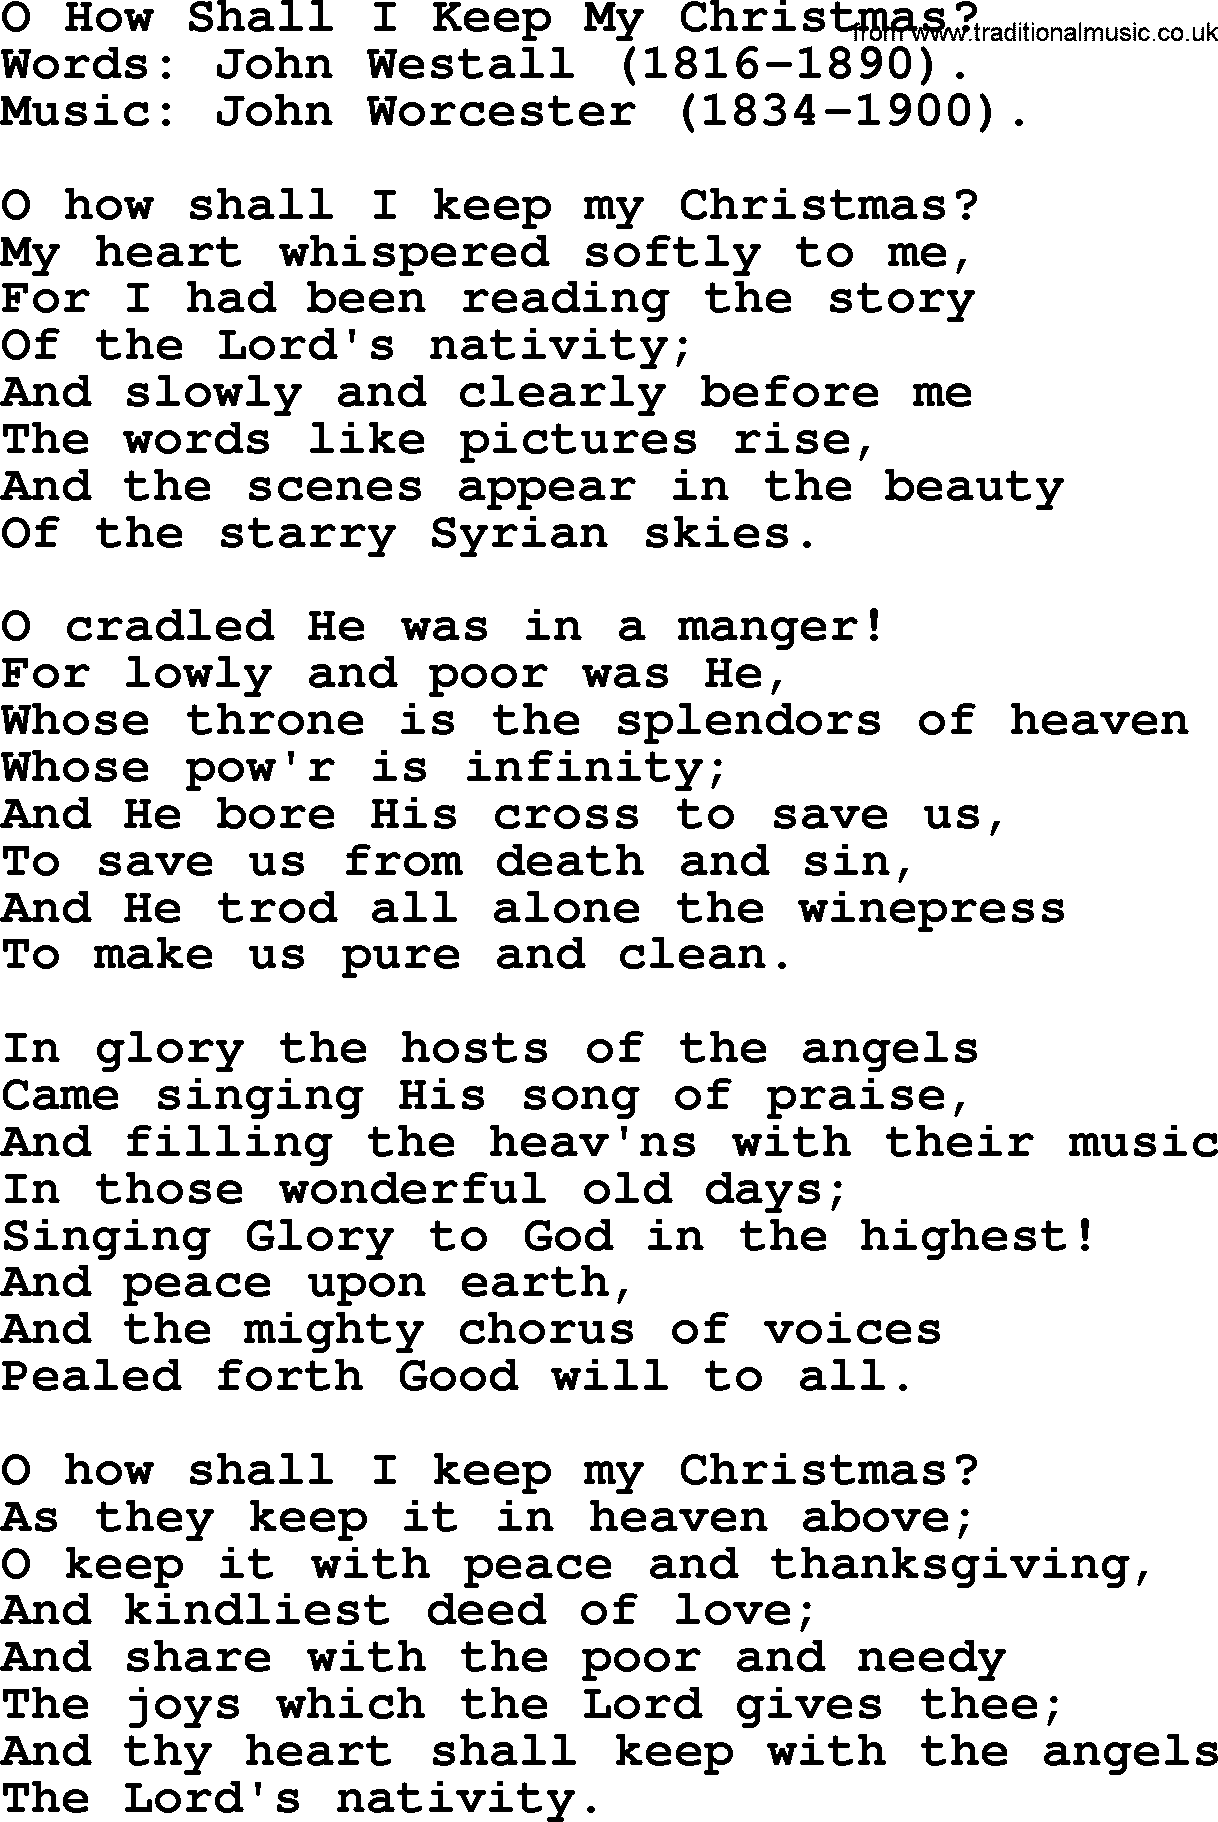 Christmas Hymns, Carols and Songs, title: O How Shall I Keep My Christmas, lyrics with PDF